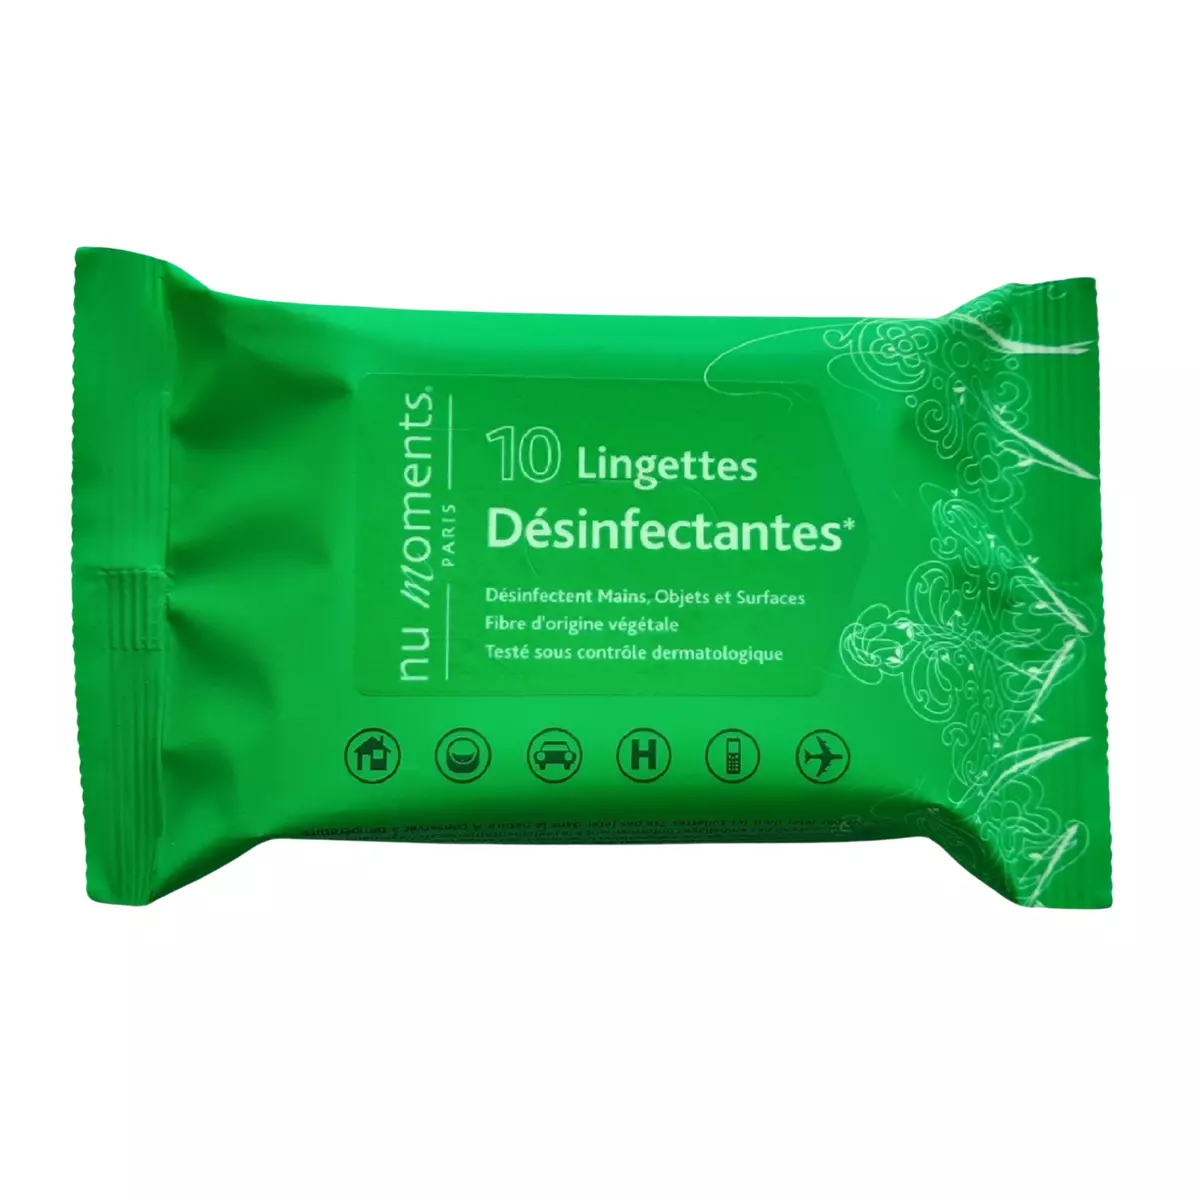 NU MOMENTS PARIS Lingette désinfectantes 10 lingettes